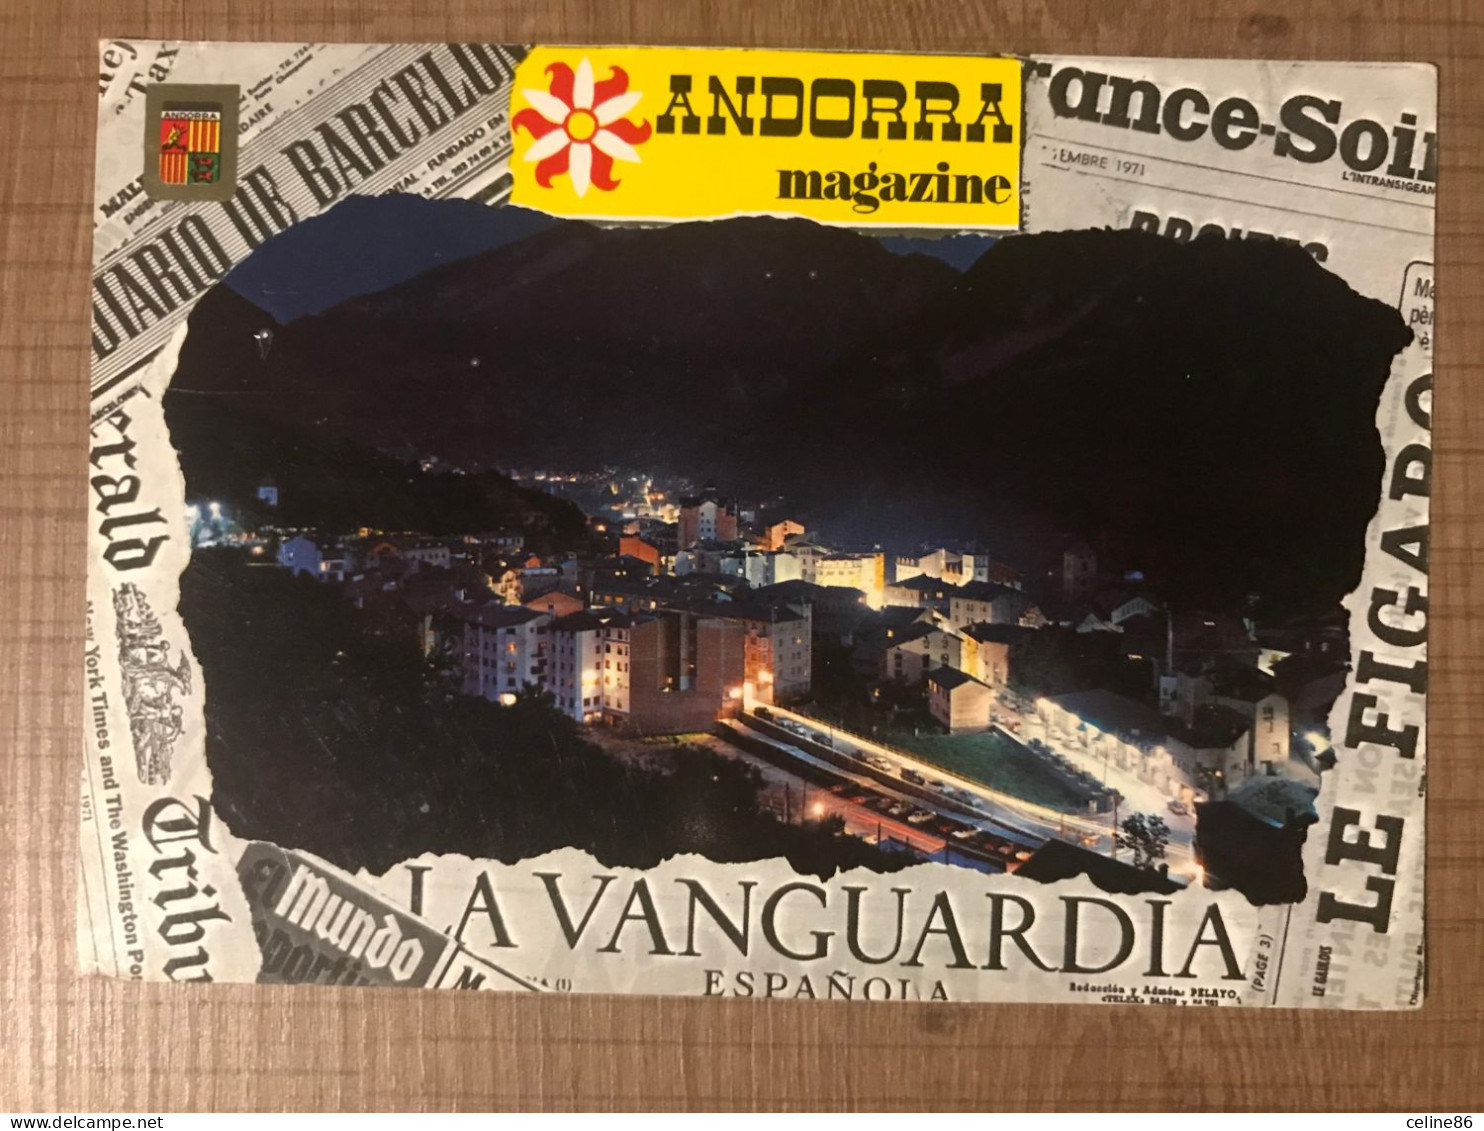  VALLS D'ANDORRA Vue Nocturne  - Andorra